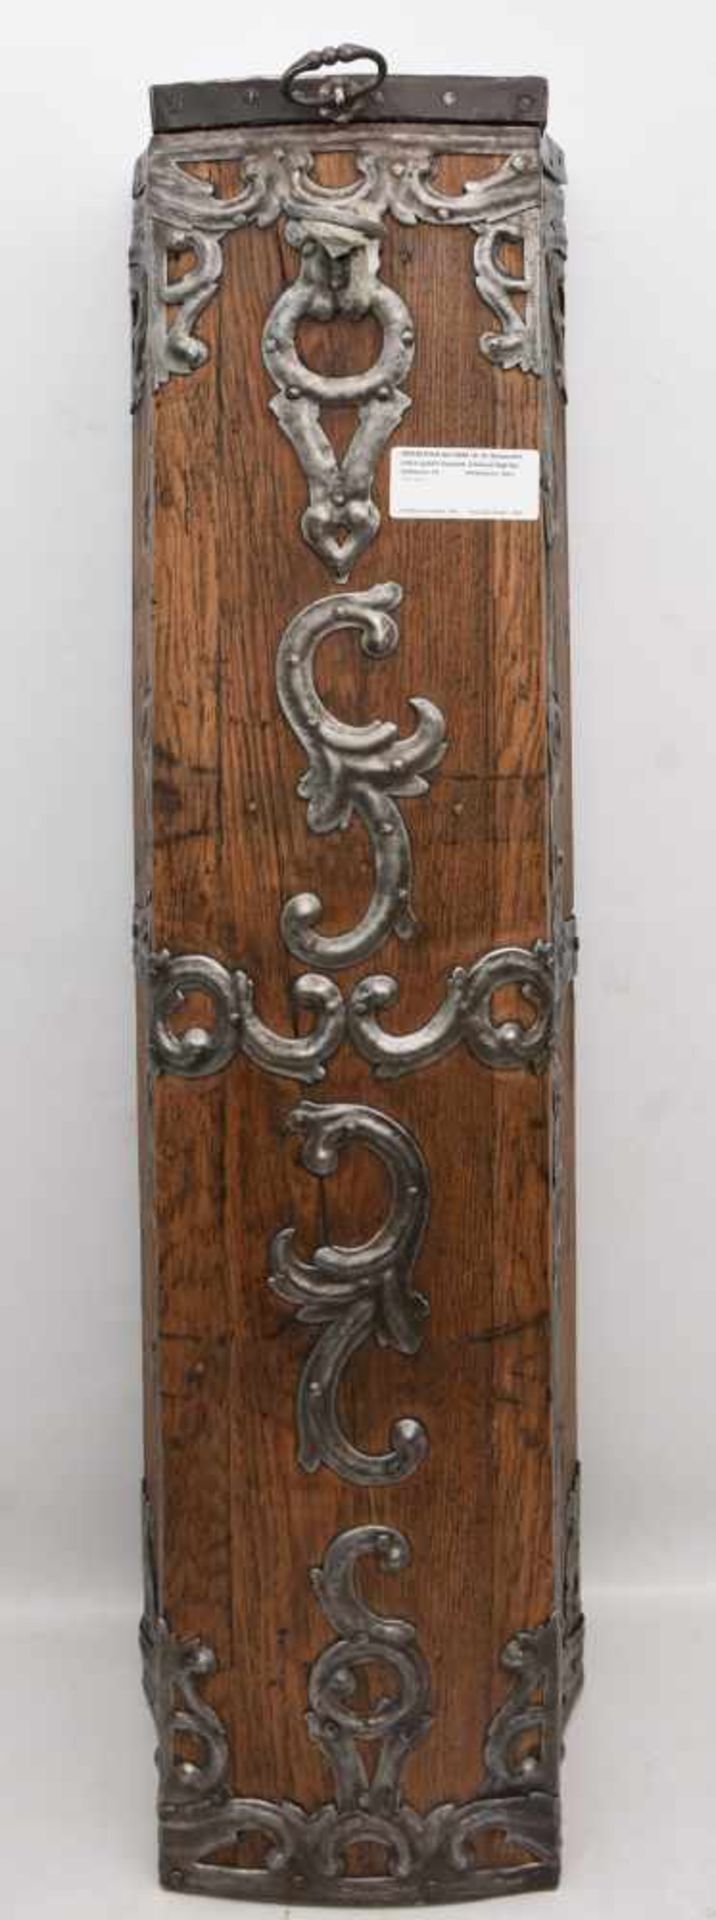 OPFERSTOCK AUS DEM 18. JH, Restauriert und in gutem Zustand, Schlüssel liegt bei. 106,5 x 30 cm. - Image 9 of 9